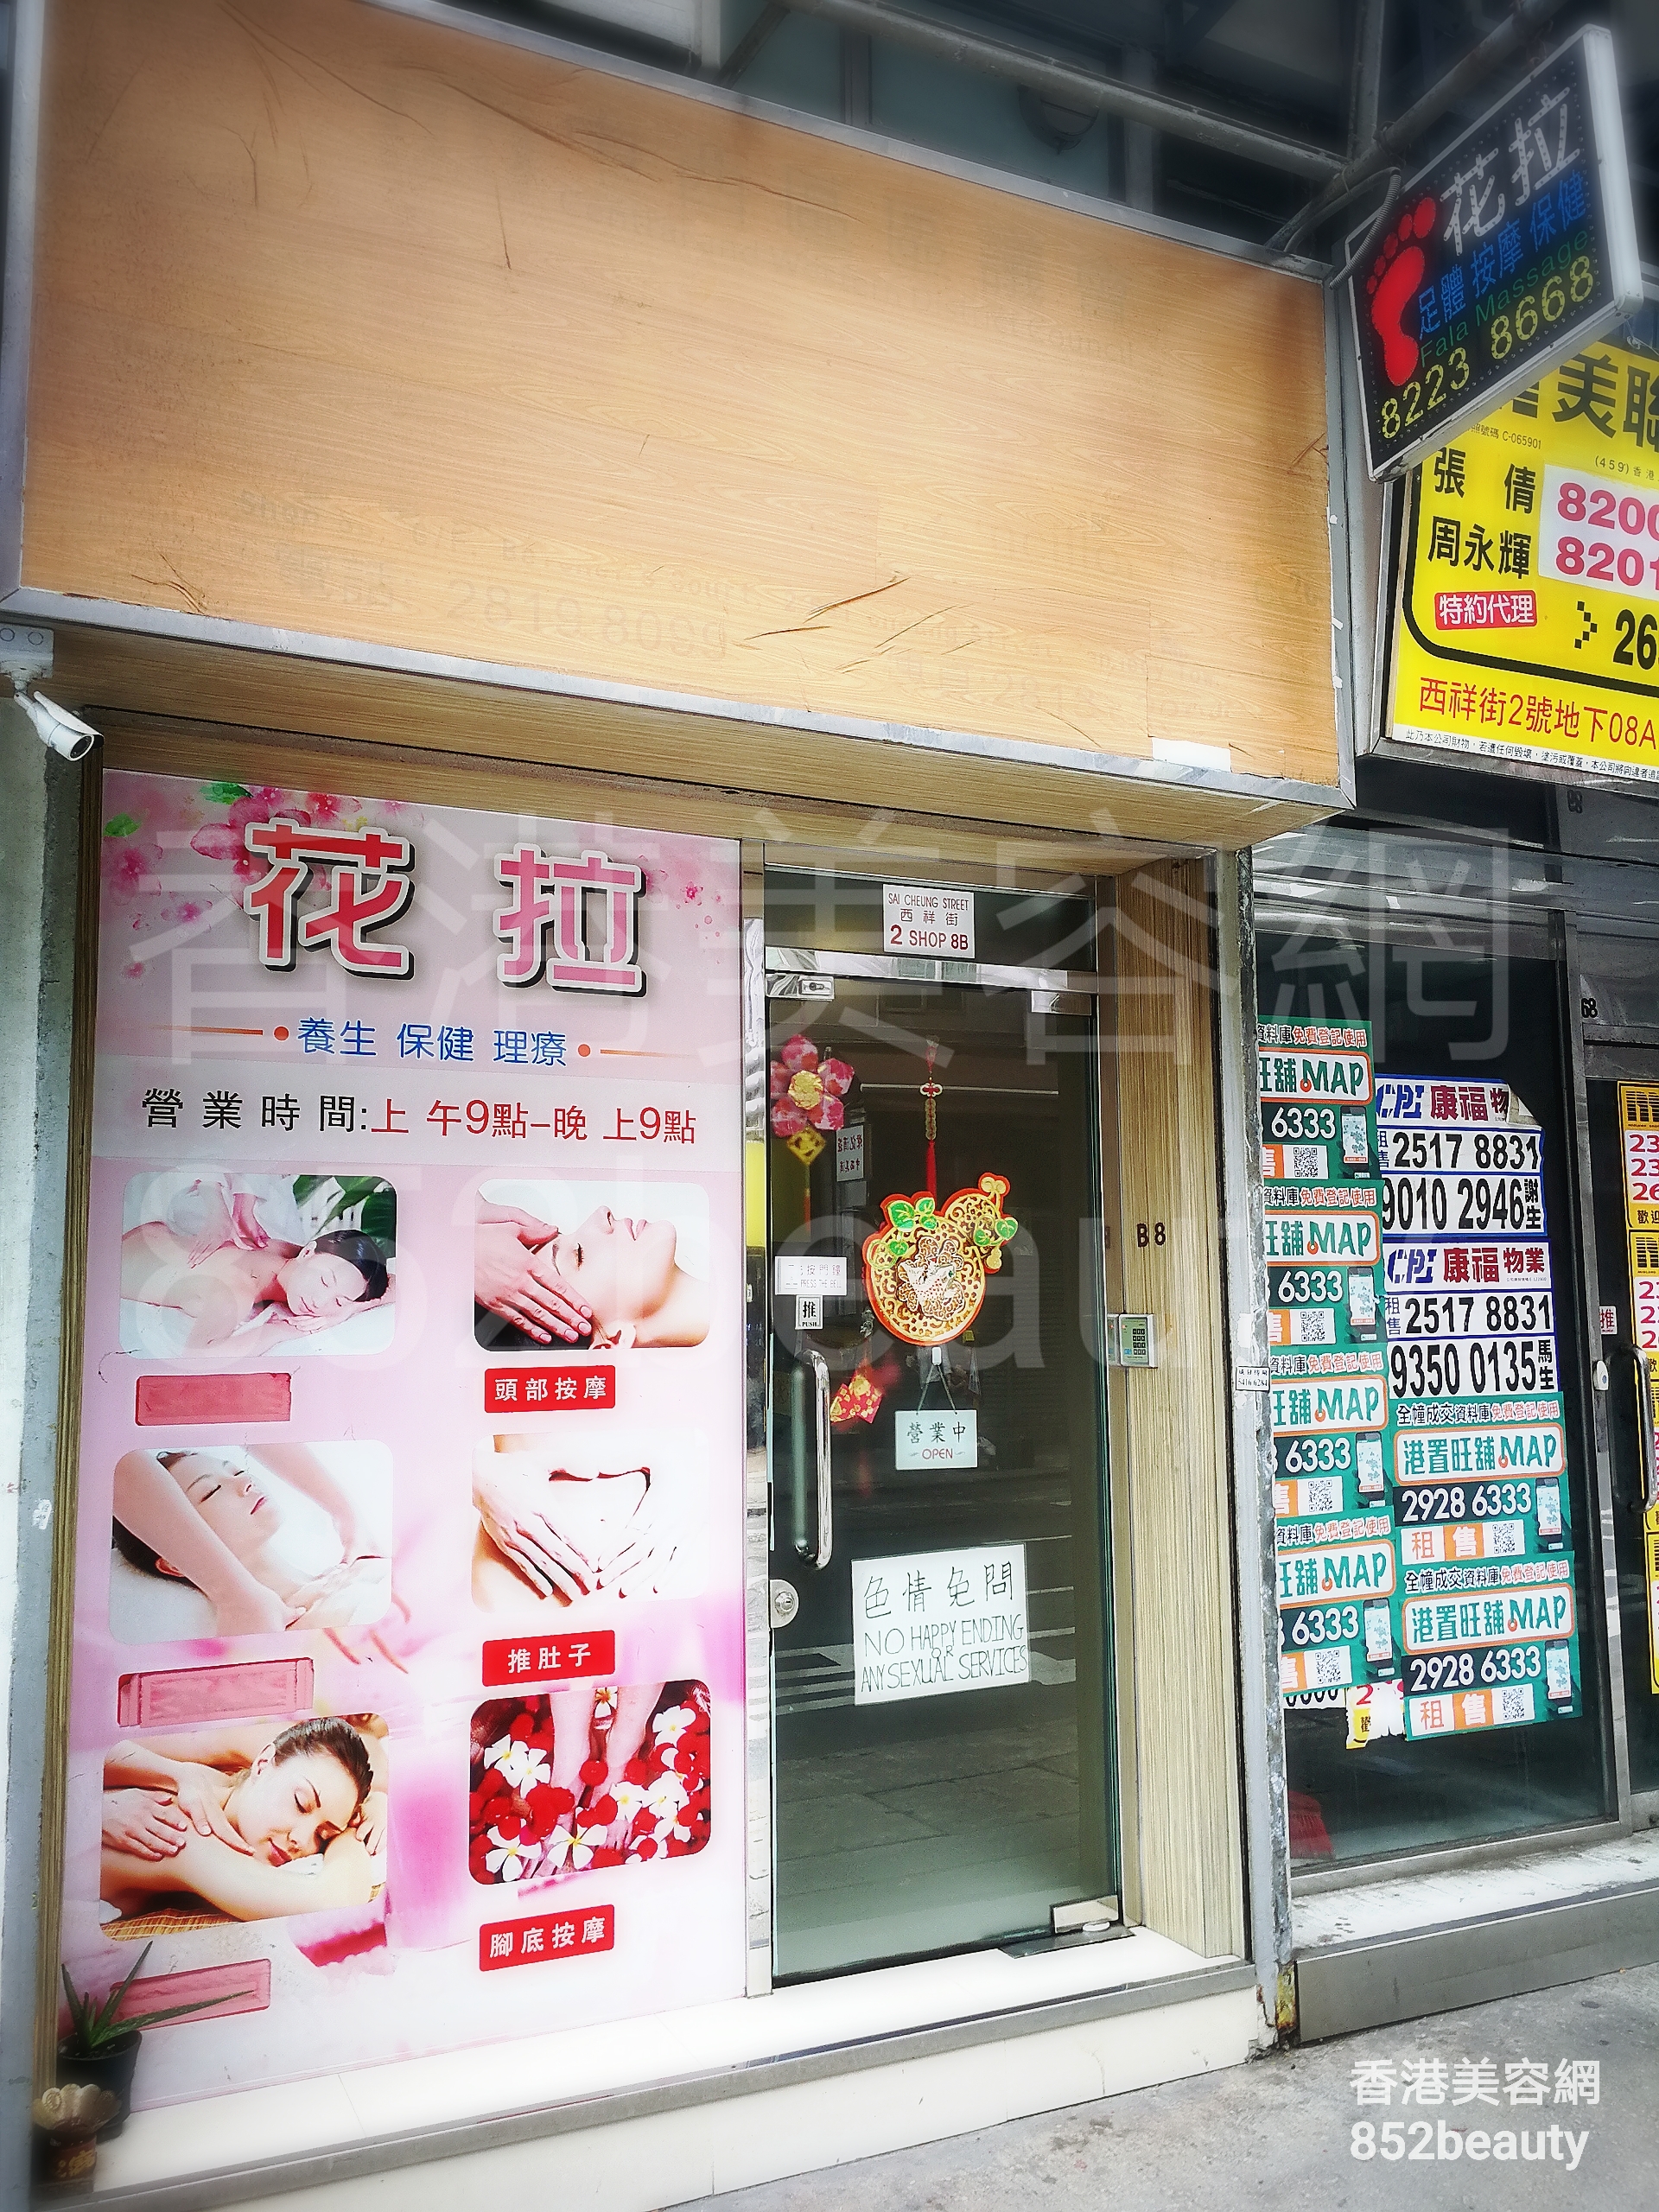 香港美容網 Hong Kong Beauty Salon 美容院 / 美容師: 花拉